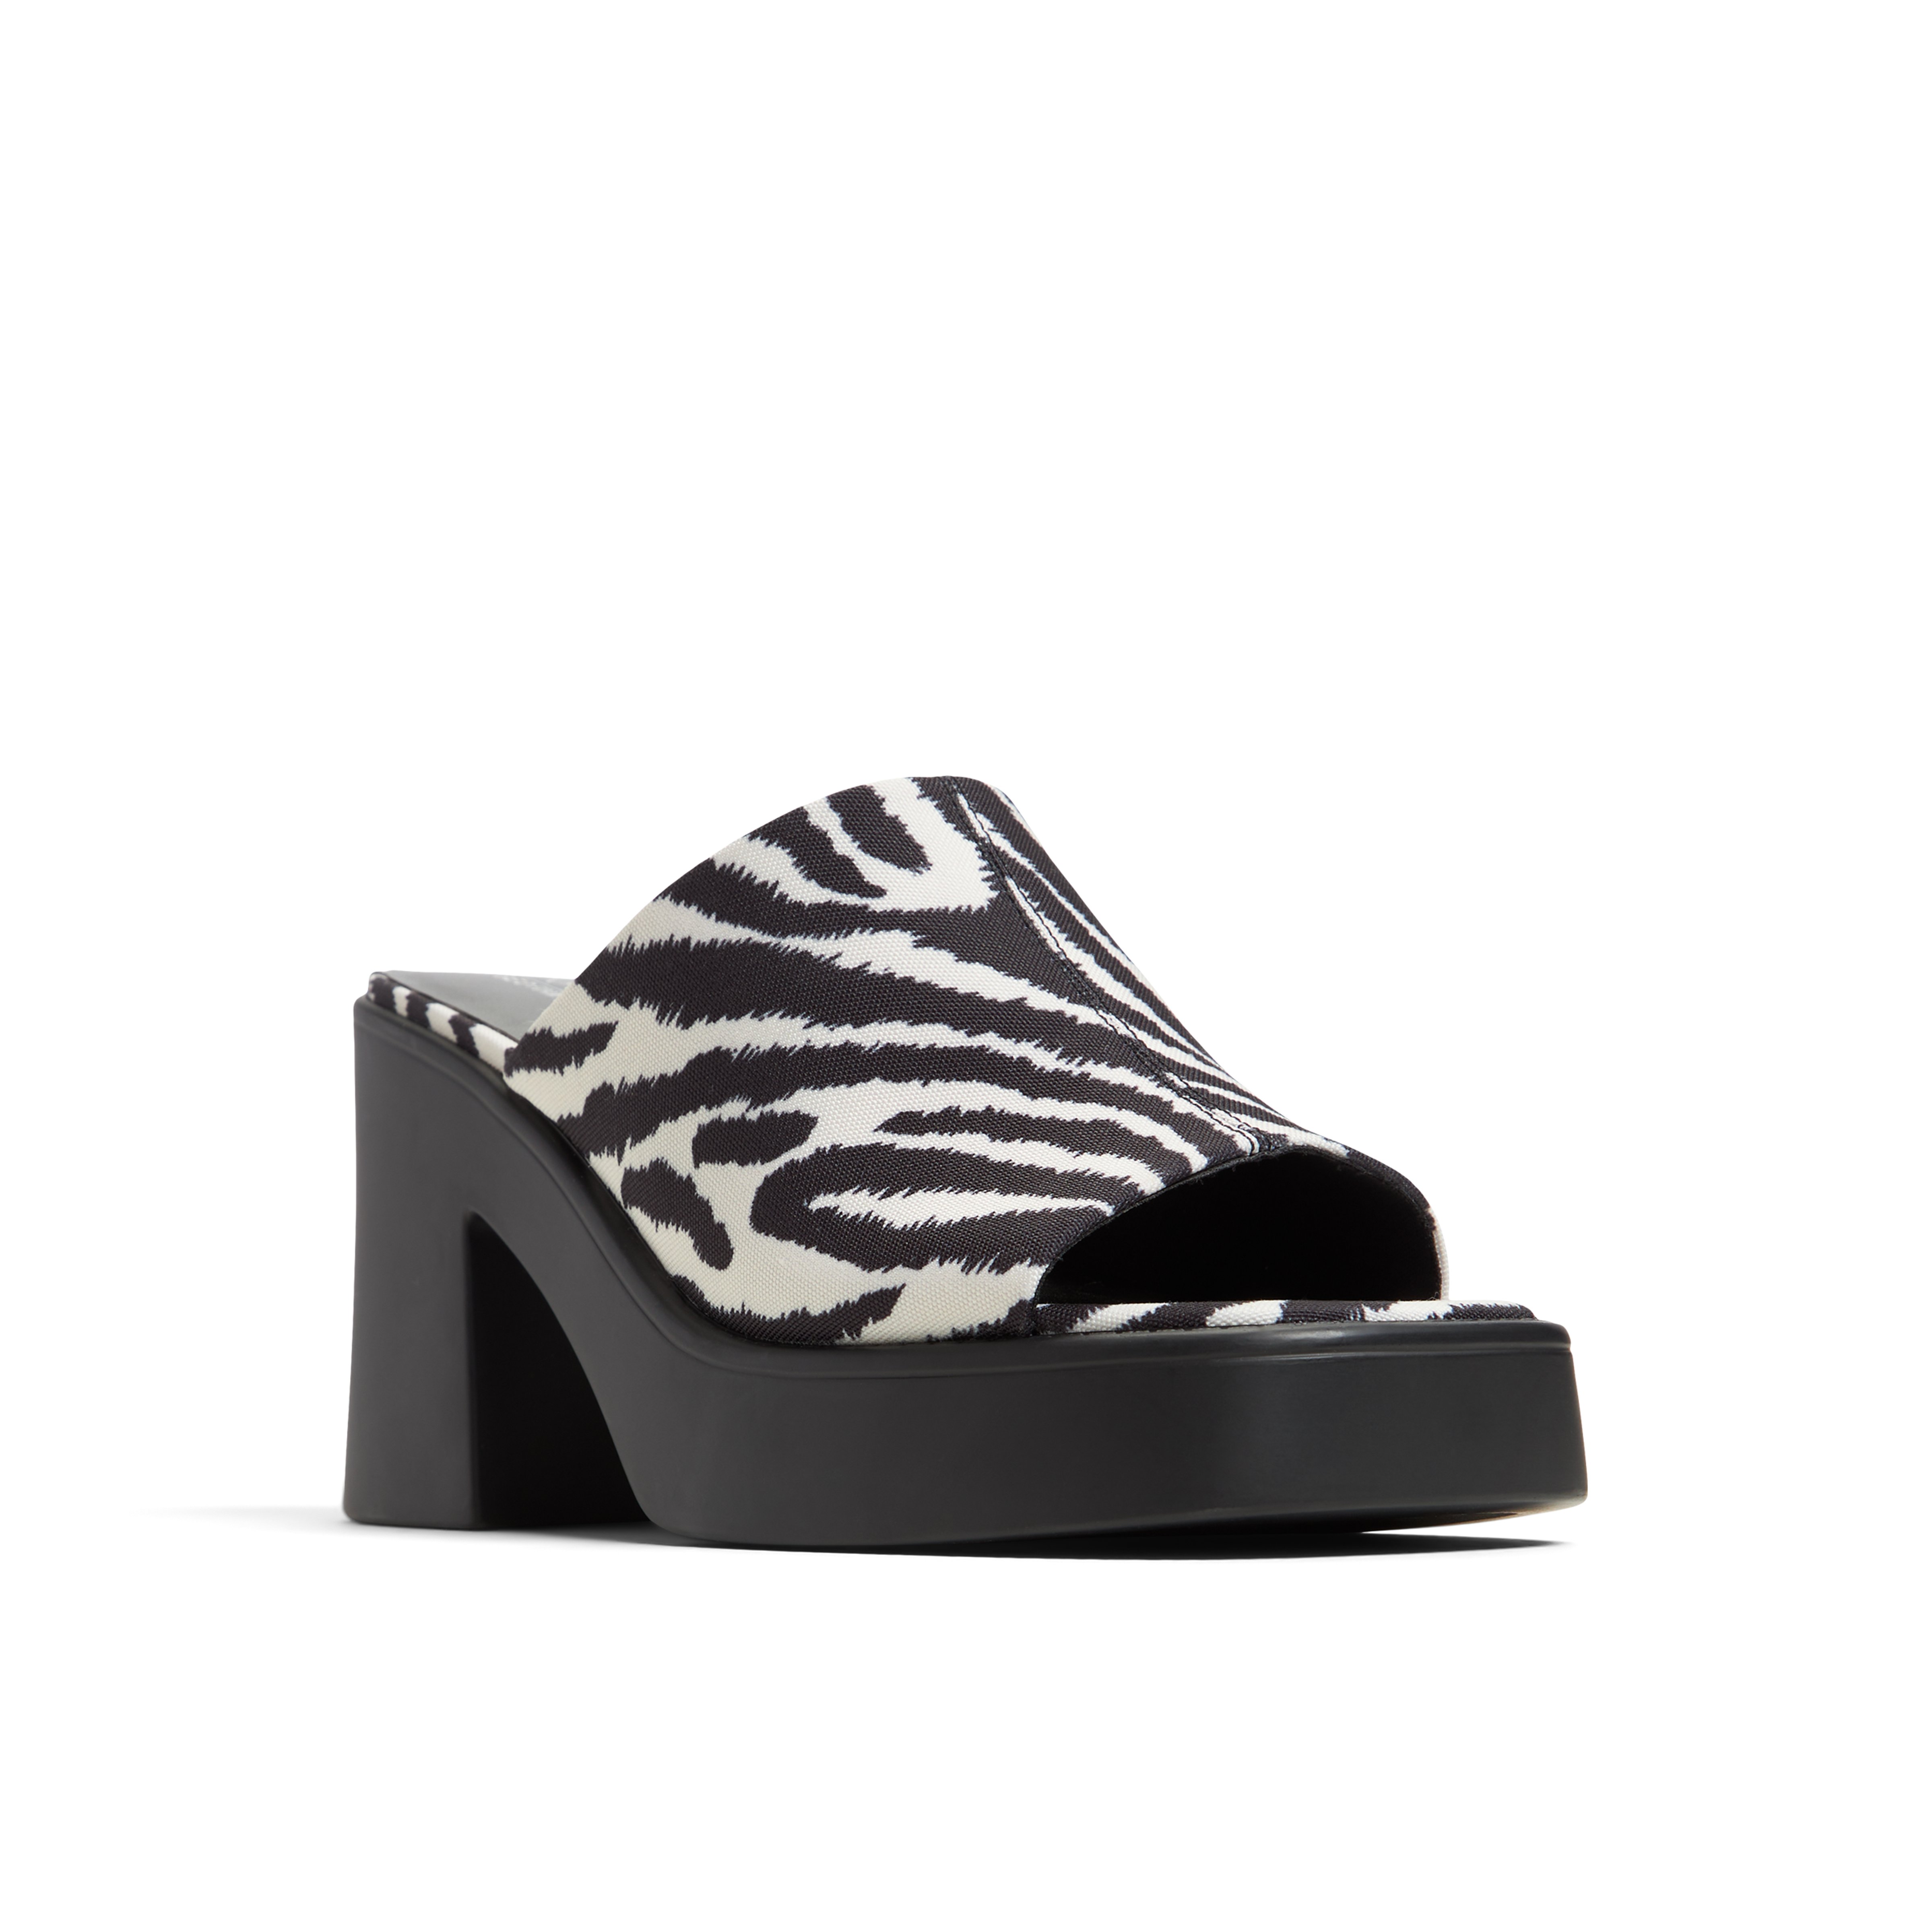 Lauryn High heel mule sandals - Block